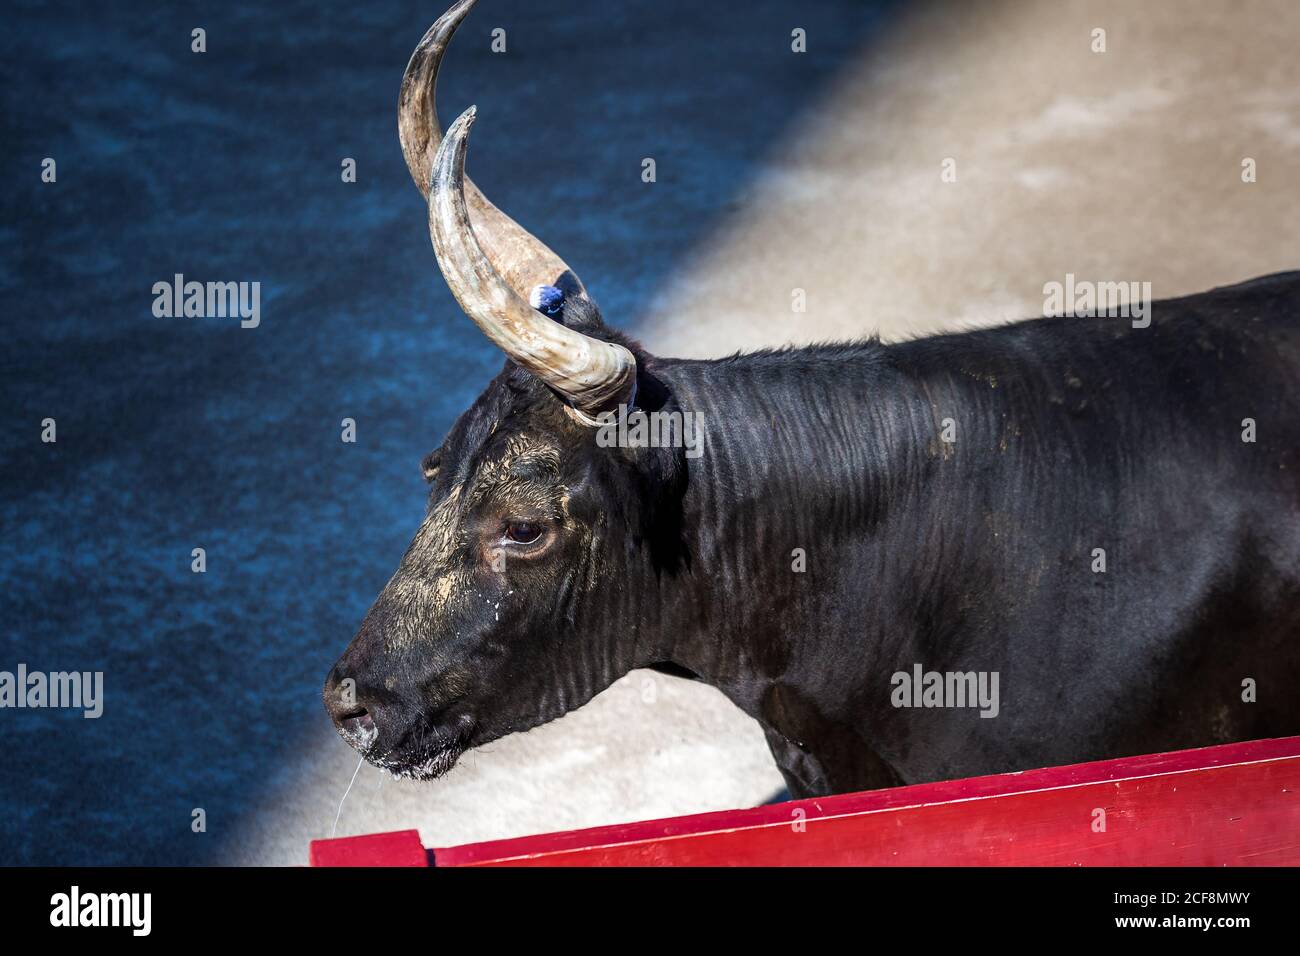 Taureau furieux dans l'arène d'Arles, France. Banque D'Images